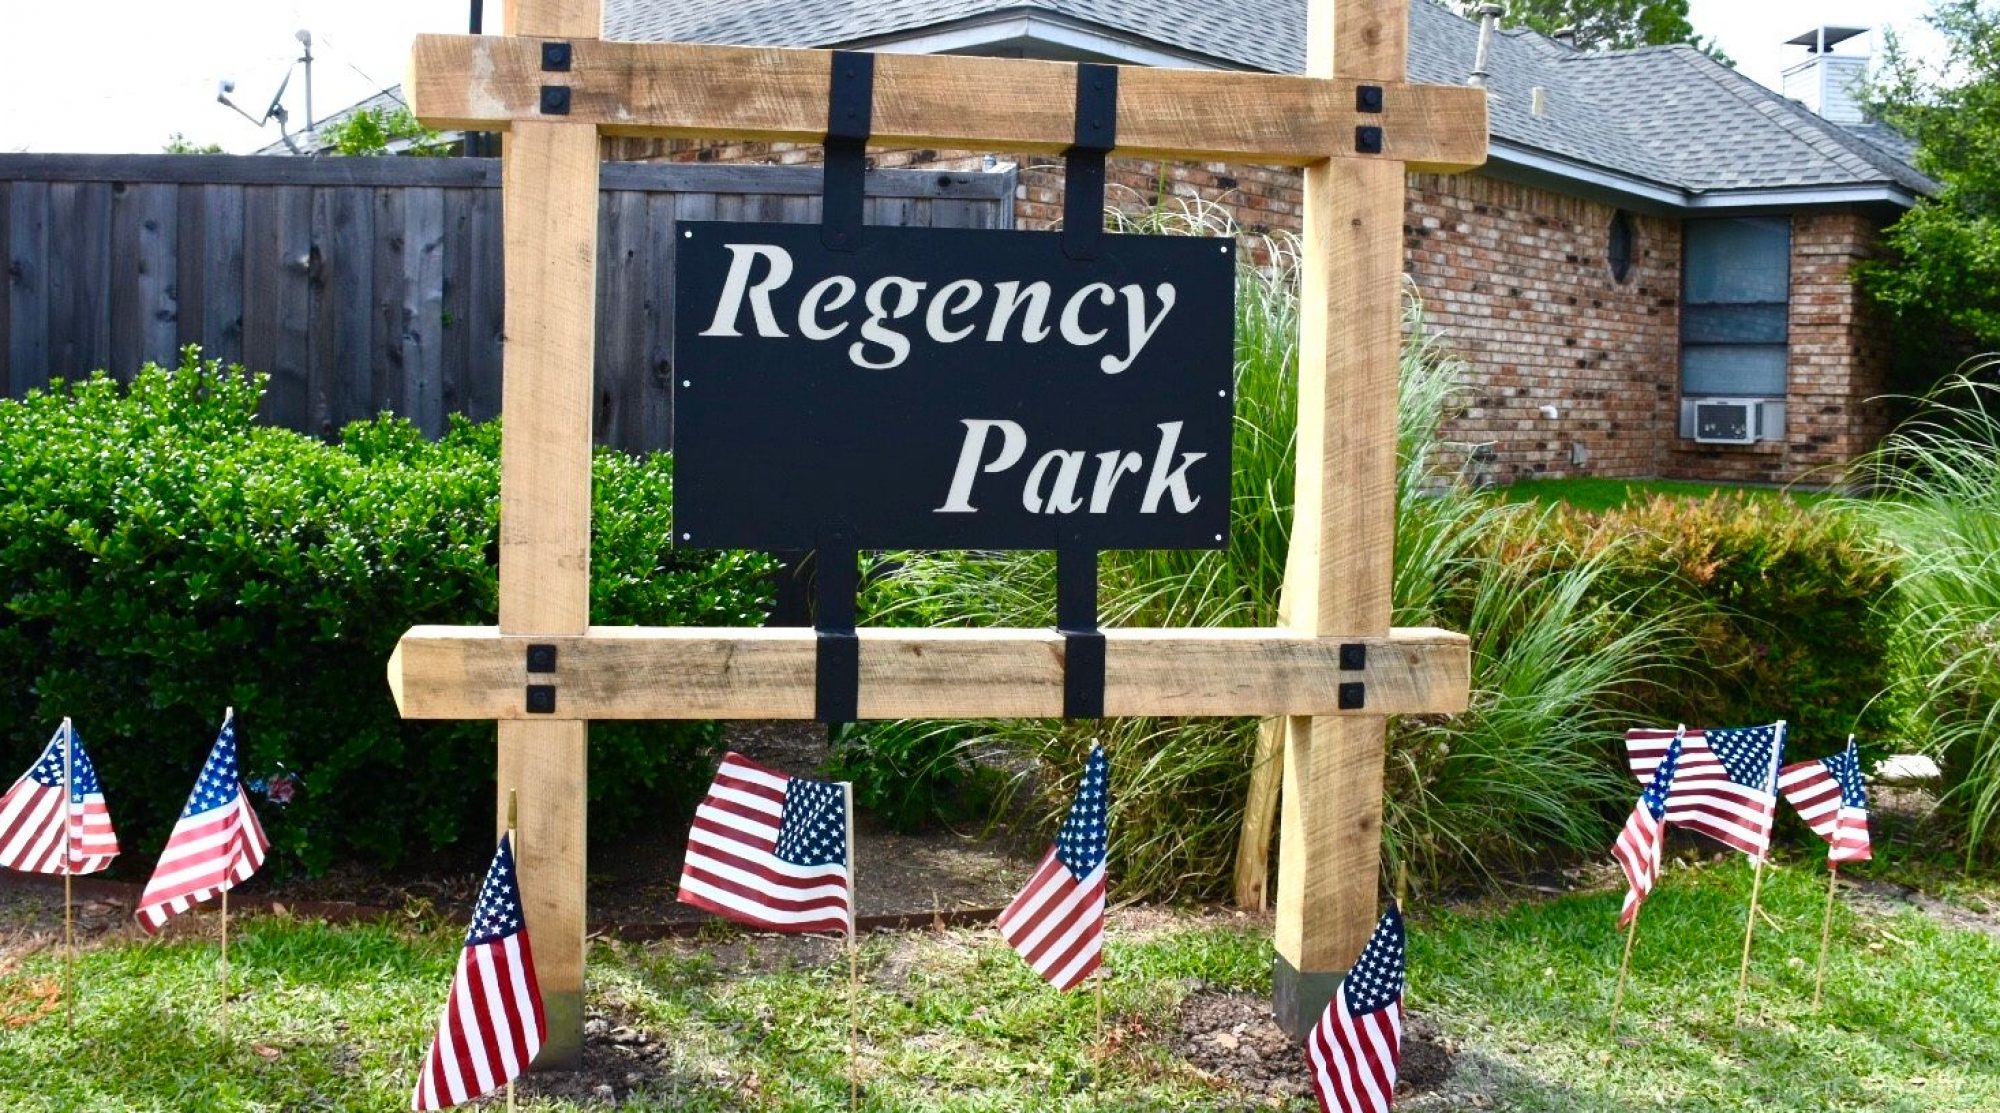 Regency Park HomeOwner Association